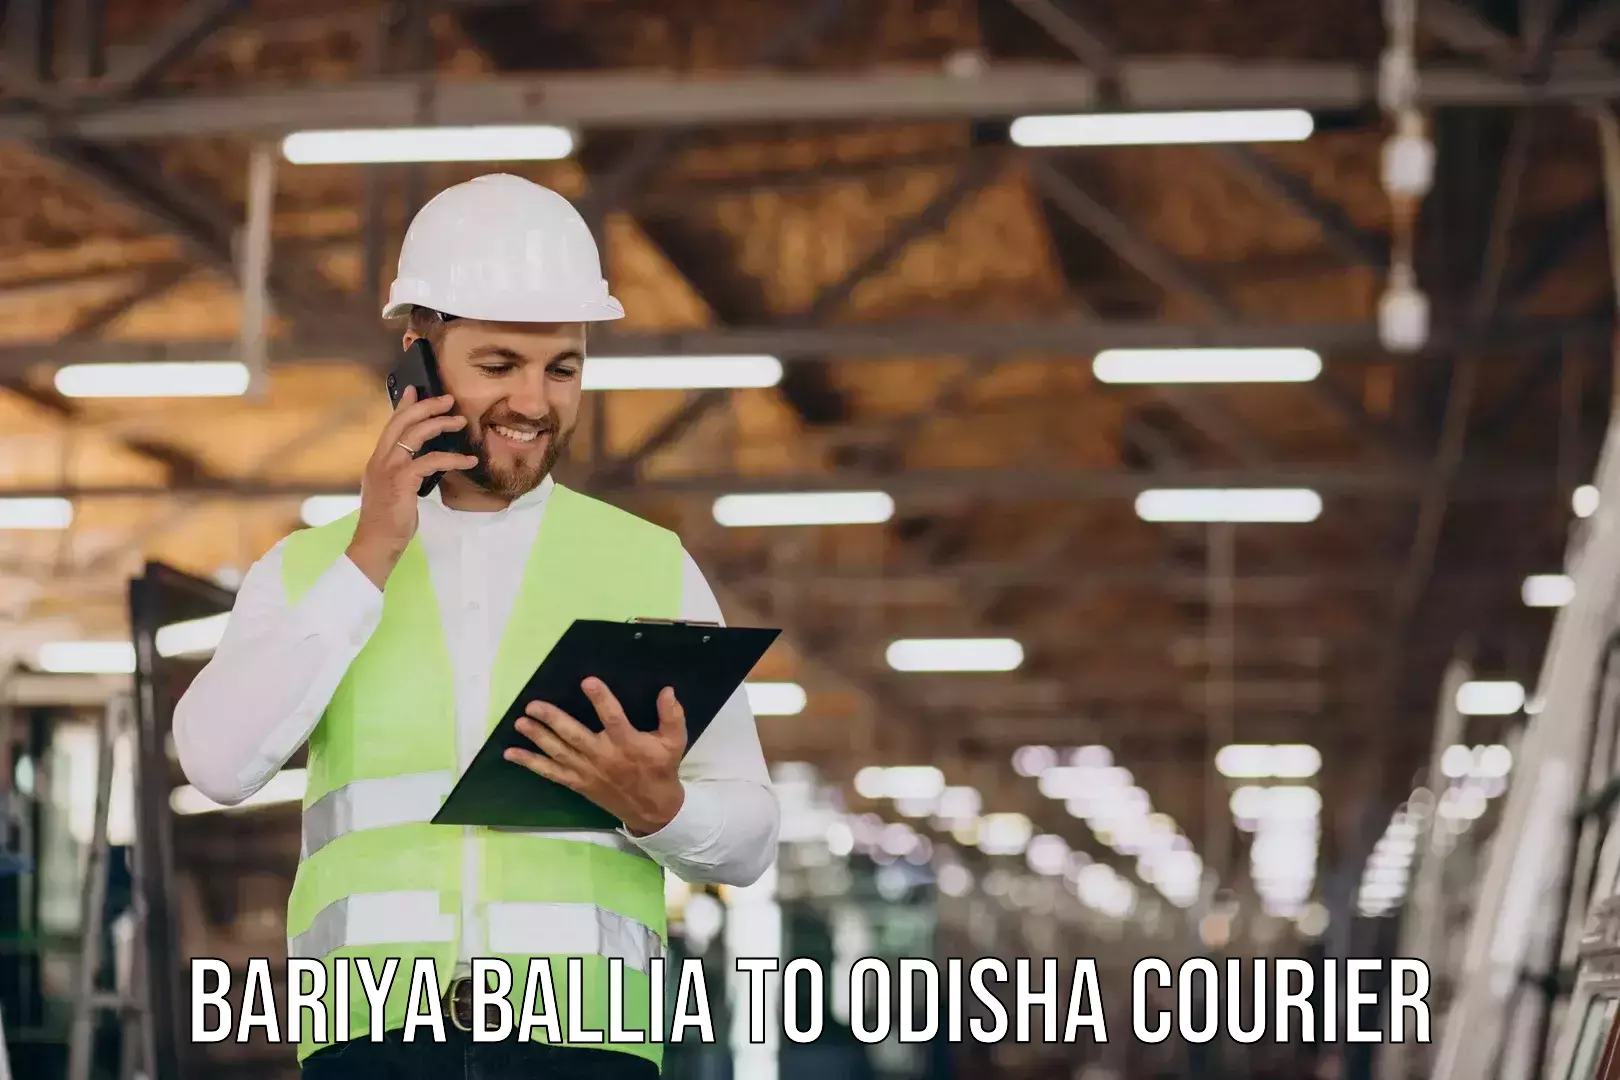 Furniture delivery service Bariya Ballia to Odisha